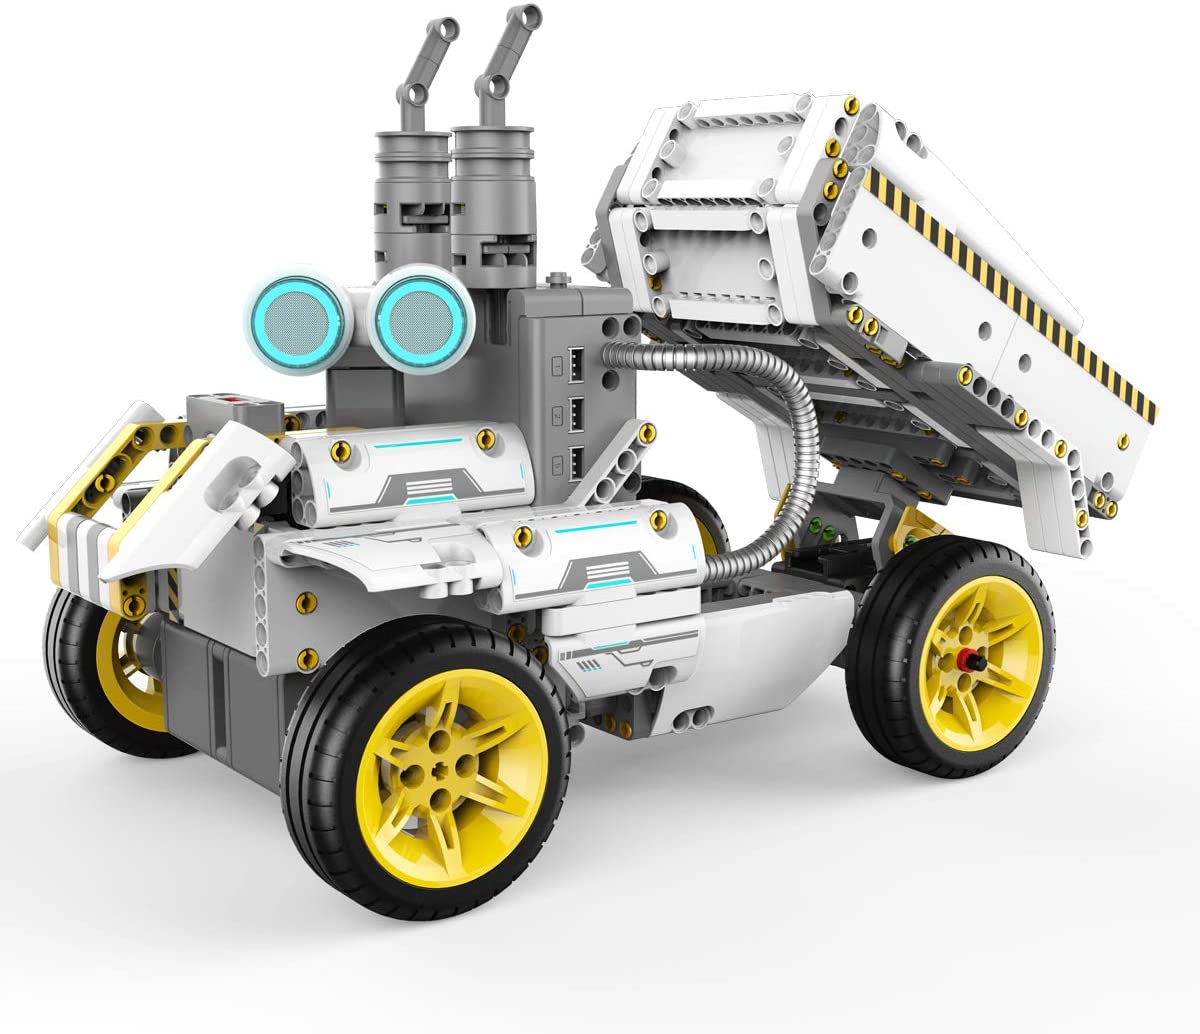 61Li4Mbjagl. Ac Sl1200 دمدمة وسحق وحرث في سلسلة Ubtech Jimu Robot Builderbots الجديدة: Truckbots Kit. باستخدام هذه المجموعة ، يمكنك إنشاء روبوتات قابلة للبناء وقابلة للتشفير مثل Dozerbot و Dirtbot أو تصميم إنشاء Jimu Robot الخاص بك. يتم توسيع المتعة من خلال منصة Blockly للتشفير ، مما يسمح للأطفال الذين تتراوح أعمارهم بين 8 سنوات وما فوق ببناء هذه الروبوتات وترميزها لأداء برامج وحيل لا حصر لها. قم بتنزيل تطبيق Jimu المجاني الذي يحتوي على إرشادات بناء خطوة بخطوة ، ثلاثية الأبعاد ، 360 درجة. الأعمار: 8+ سنوات. يشمل:
&Lt;Ul&Gt; &Lt;Li&Gt;410 أجزاء يتم تجميعها معًا&Lt;/Li&Gt; &Lt;Li&Gt;2 محركات مؤازرة آلية الحركة سلسة&Lt;/Li&Gt; &Lt;Li&Gt;2 محركات Dc&Lt;/Li&Gt; &Lt;Li&Gt;1 مستشعر بالموجات فوق الصوتية وضوء Rgb&Lt;/Li&Gt; &Lt;Li&Gt;1 صندوق التحكم الرئيسي&Lt;/Li&Gt; &Lt;Li&Gt;كابل Usb ودليل البدء السريع متضمن&Lt;/Li&Gt;
&Lt;/Ul&Gt;
يتطلب:
&Lt;Ul&Gt; &Lt;Li&Gt;مطلوب جهاز Ios أو Android متوافق (يُباع بشكل منفصل).&Lt;/Li&Gt;
&Lt;/Ul&Gt;
بناء. كود.
&Lt;Ul&Gt; &Lt;Li&Gt;قم ببناء Dozerbot أو Dirtbot أو تصميم إنشاء Jimu Robot الخاص بك&Lt;/Li&Gt; &Lt;Li&Gt;تعلم كيفية استخدام Blockly Code لبرمجة الروبوت الخاص بك لتجاوز العوائق وحمل الأشياء وإنشاء تأثيرات لونية والمزيد&Lt;/Li&Gt; &Lt;Li&Gt;قم بإنشاء إجراءات مخصصة جديدة تمامًا باستخدام وظيفة Prp (وضعية ، وتسجيل ، وتشغيل)&Lt;/Li&Gt; &Lt;Li&Gt;لا توجد أدوات مطلوبة - تعليماتنا المتحركة ثلاثية الأبعاد بزاوية 360 درجة في تطبيق Jimu المجاني توجه المستخدمين عبر الخطوات&Lt;/Li&Gt; &Lt;Li&Gt;عظيم للأعمار من 8 سنوات وما فوق&Lt;/Li&Gt;
&Lt;/Ul&Gt; يوبي تيك , شاحنة جيمو روبوت